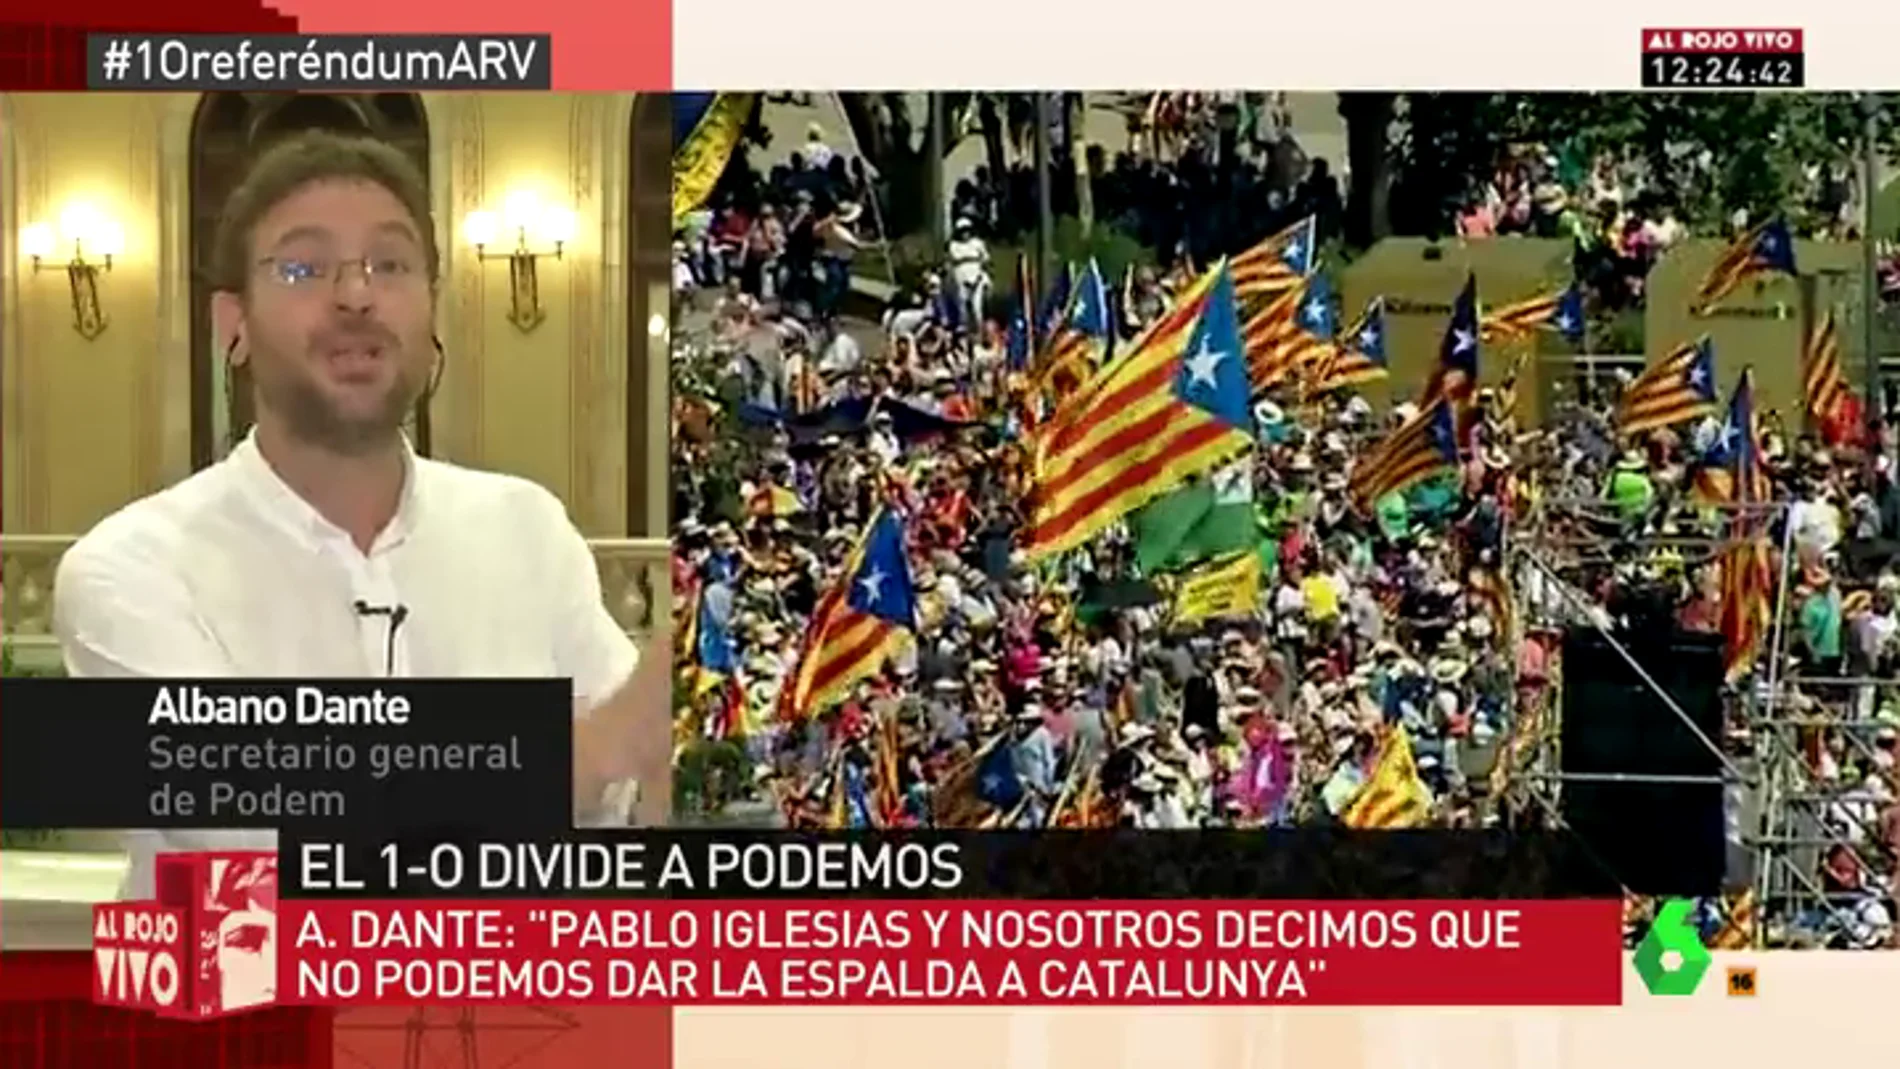 Albano Dante: "Pablo Iglesias y nosotros decimos que no podemos dar la espalda a lo que dice la gente en Cataluña"